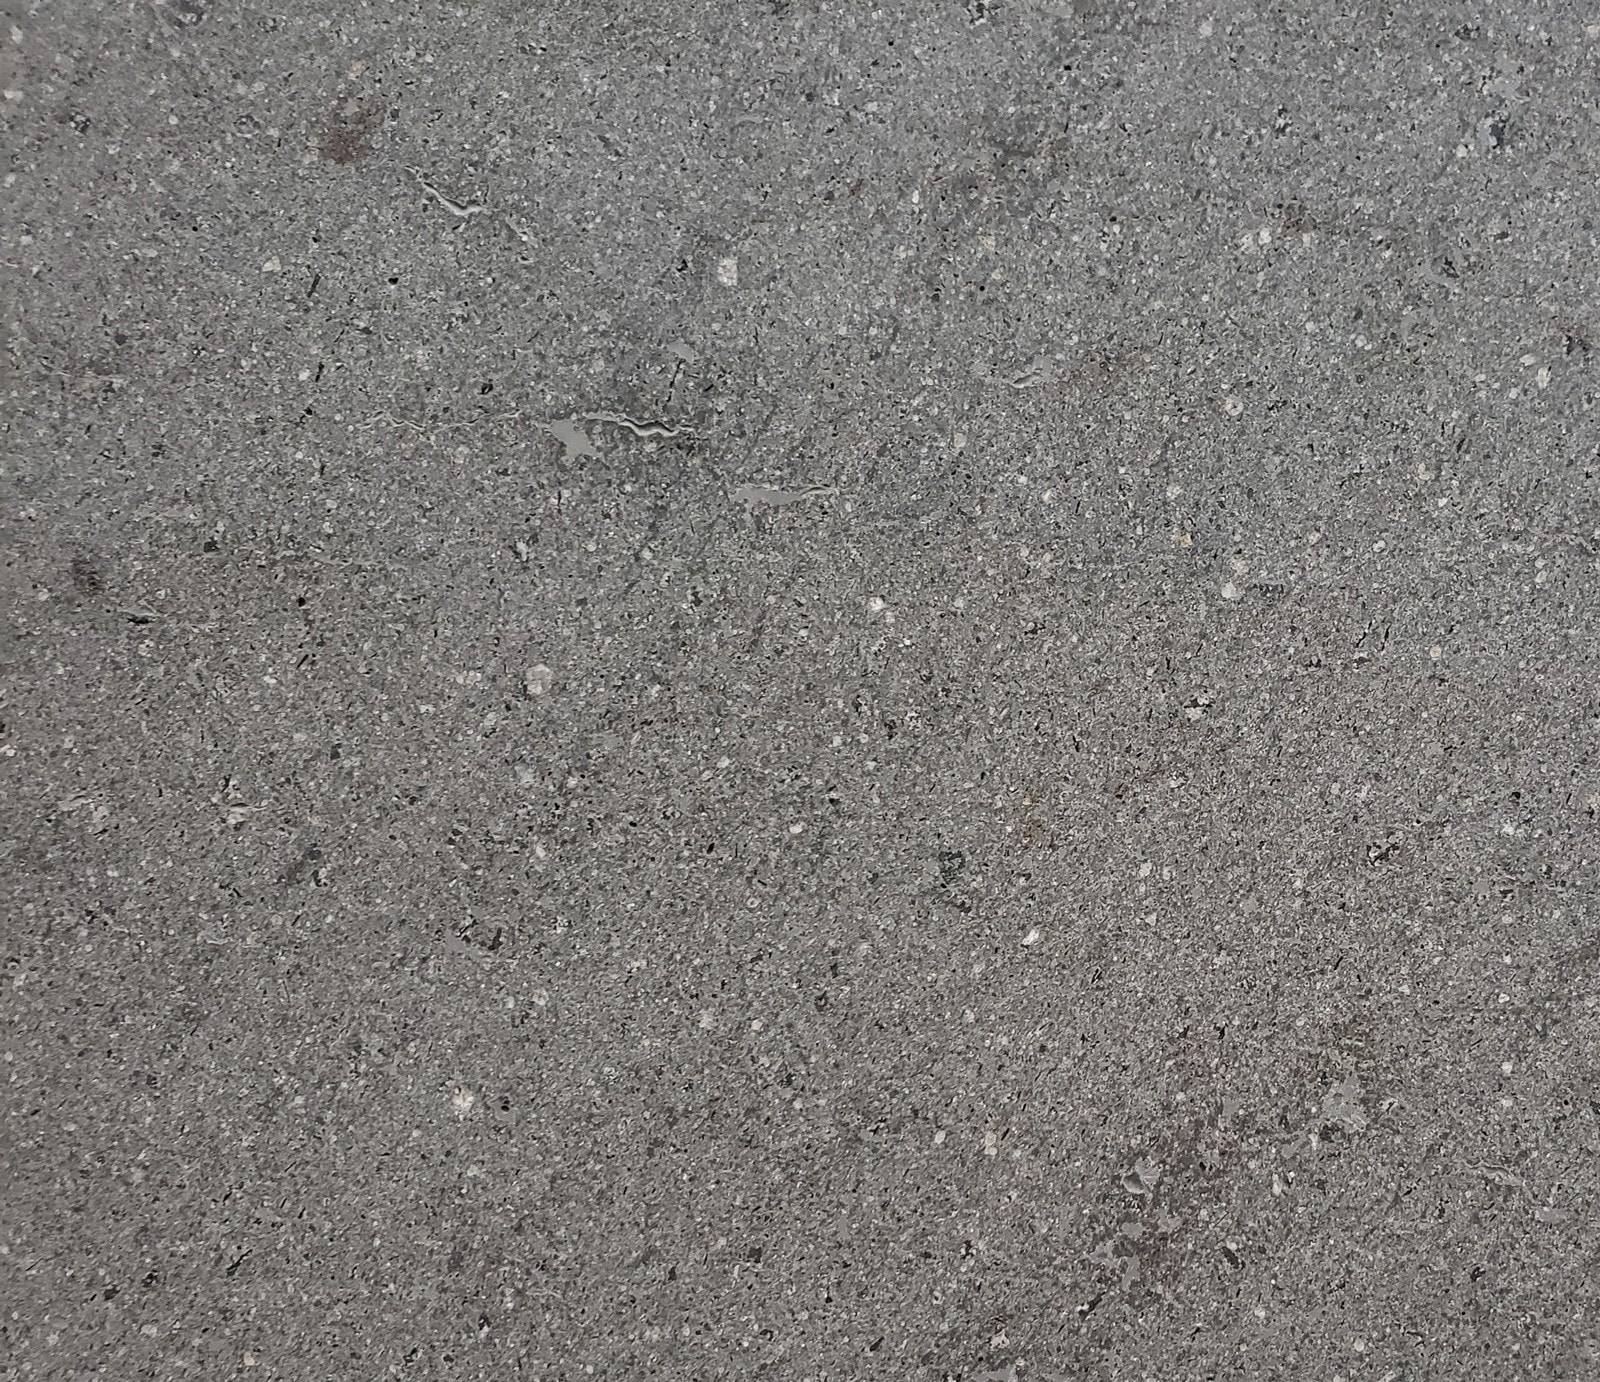 Basaltina 101 1 Close Up, Primestones® Granite, Quartz, Marble